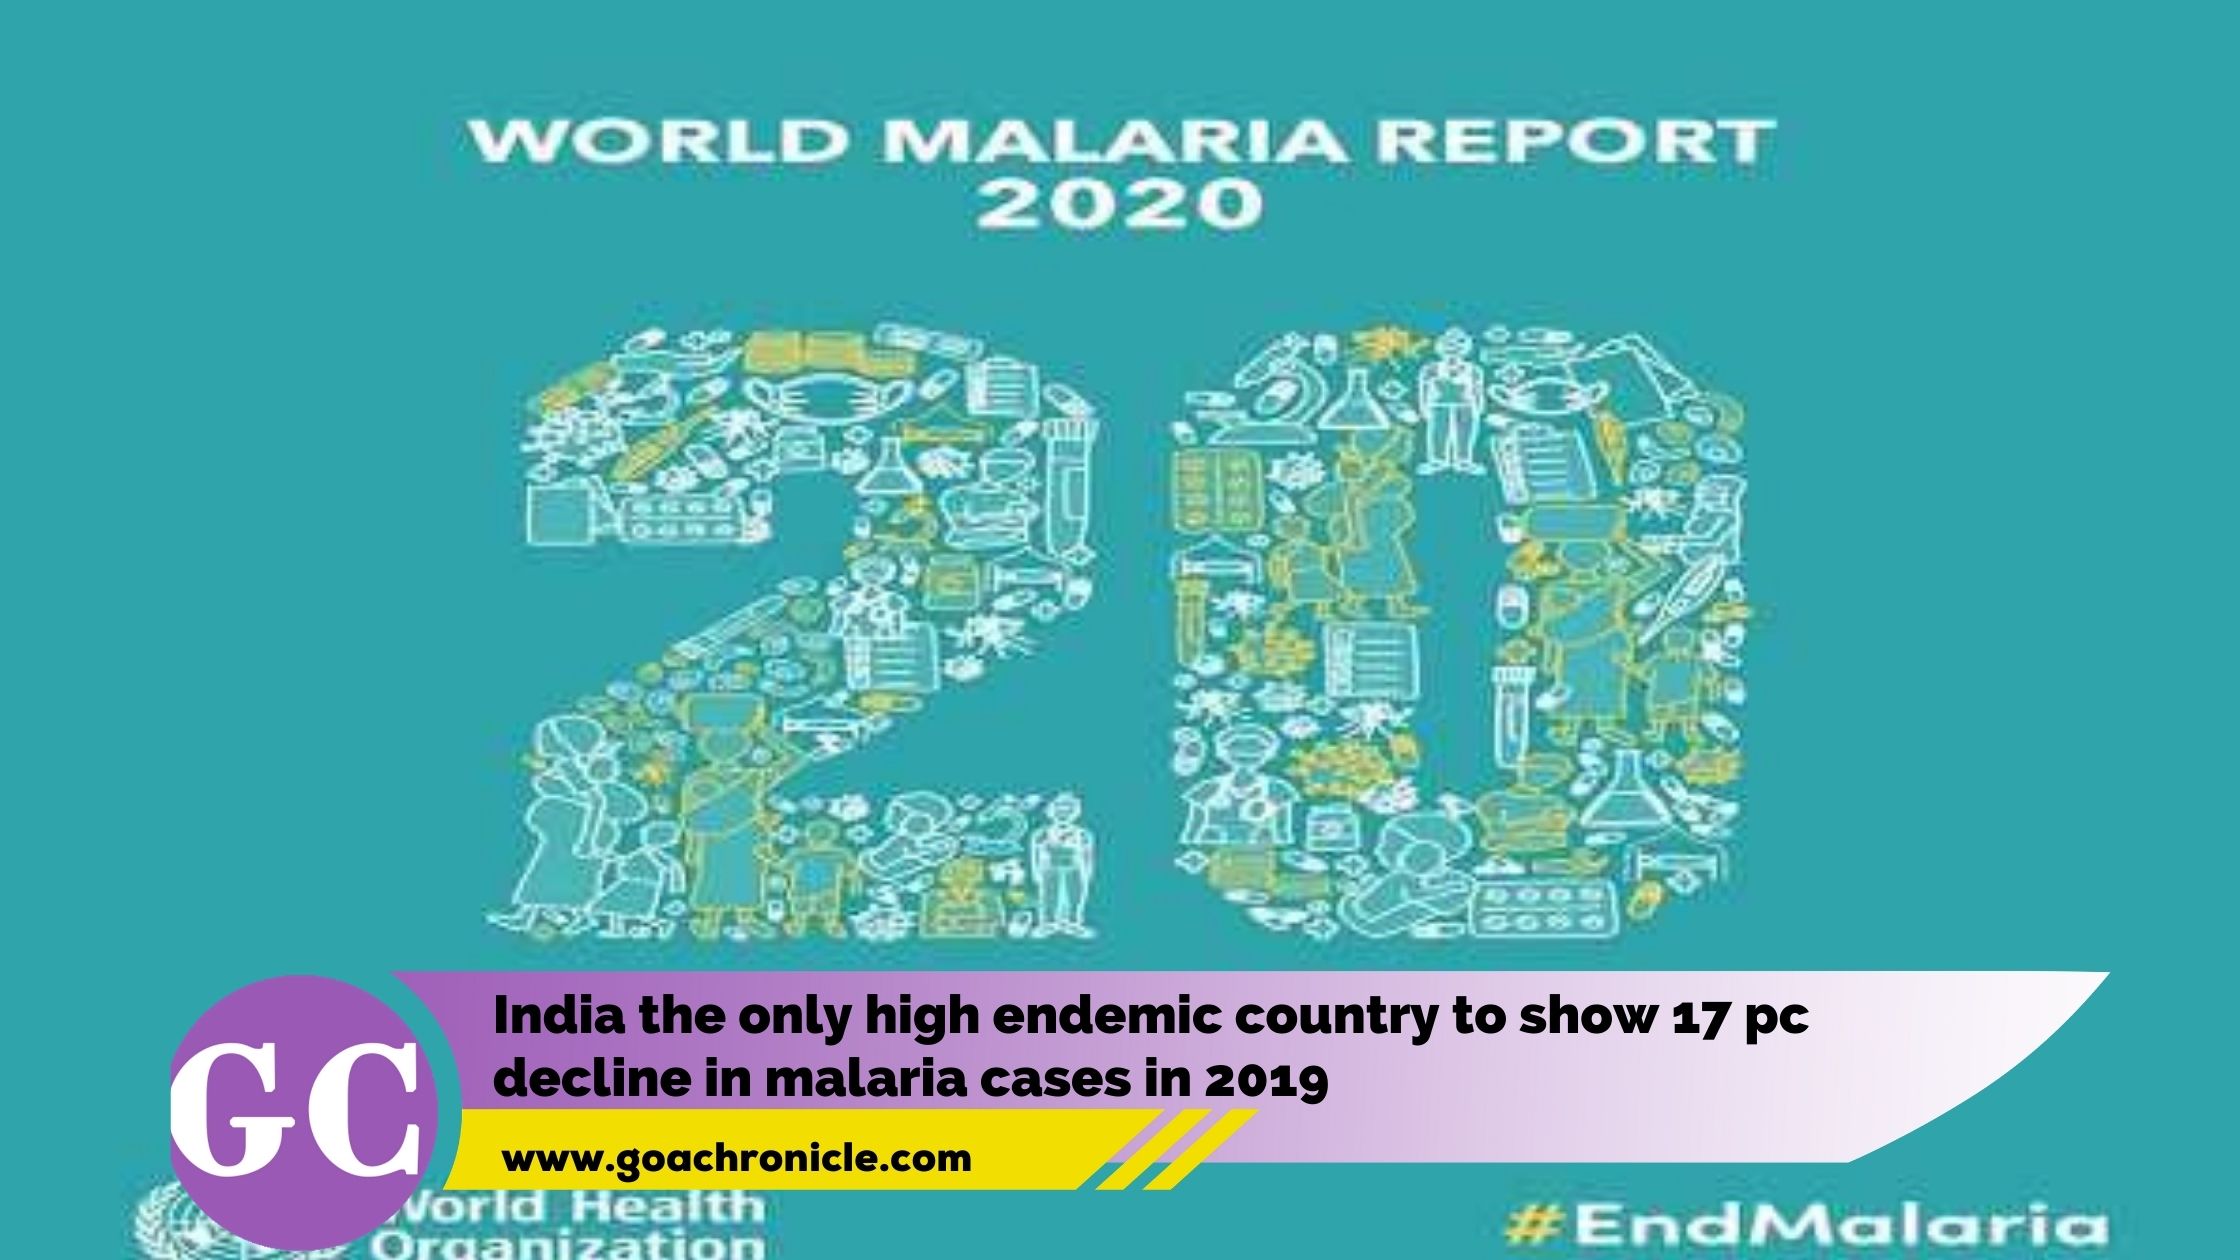 ڈبلیو ایچ او کی عالمی ملیریا  رپورٹ 2020 : بھارت ملیریا کے بوجھ میں لگاتار اثرانگیز کمی کو حاصل کررہا ہے